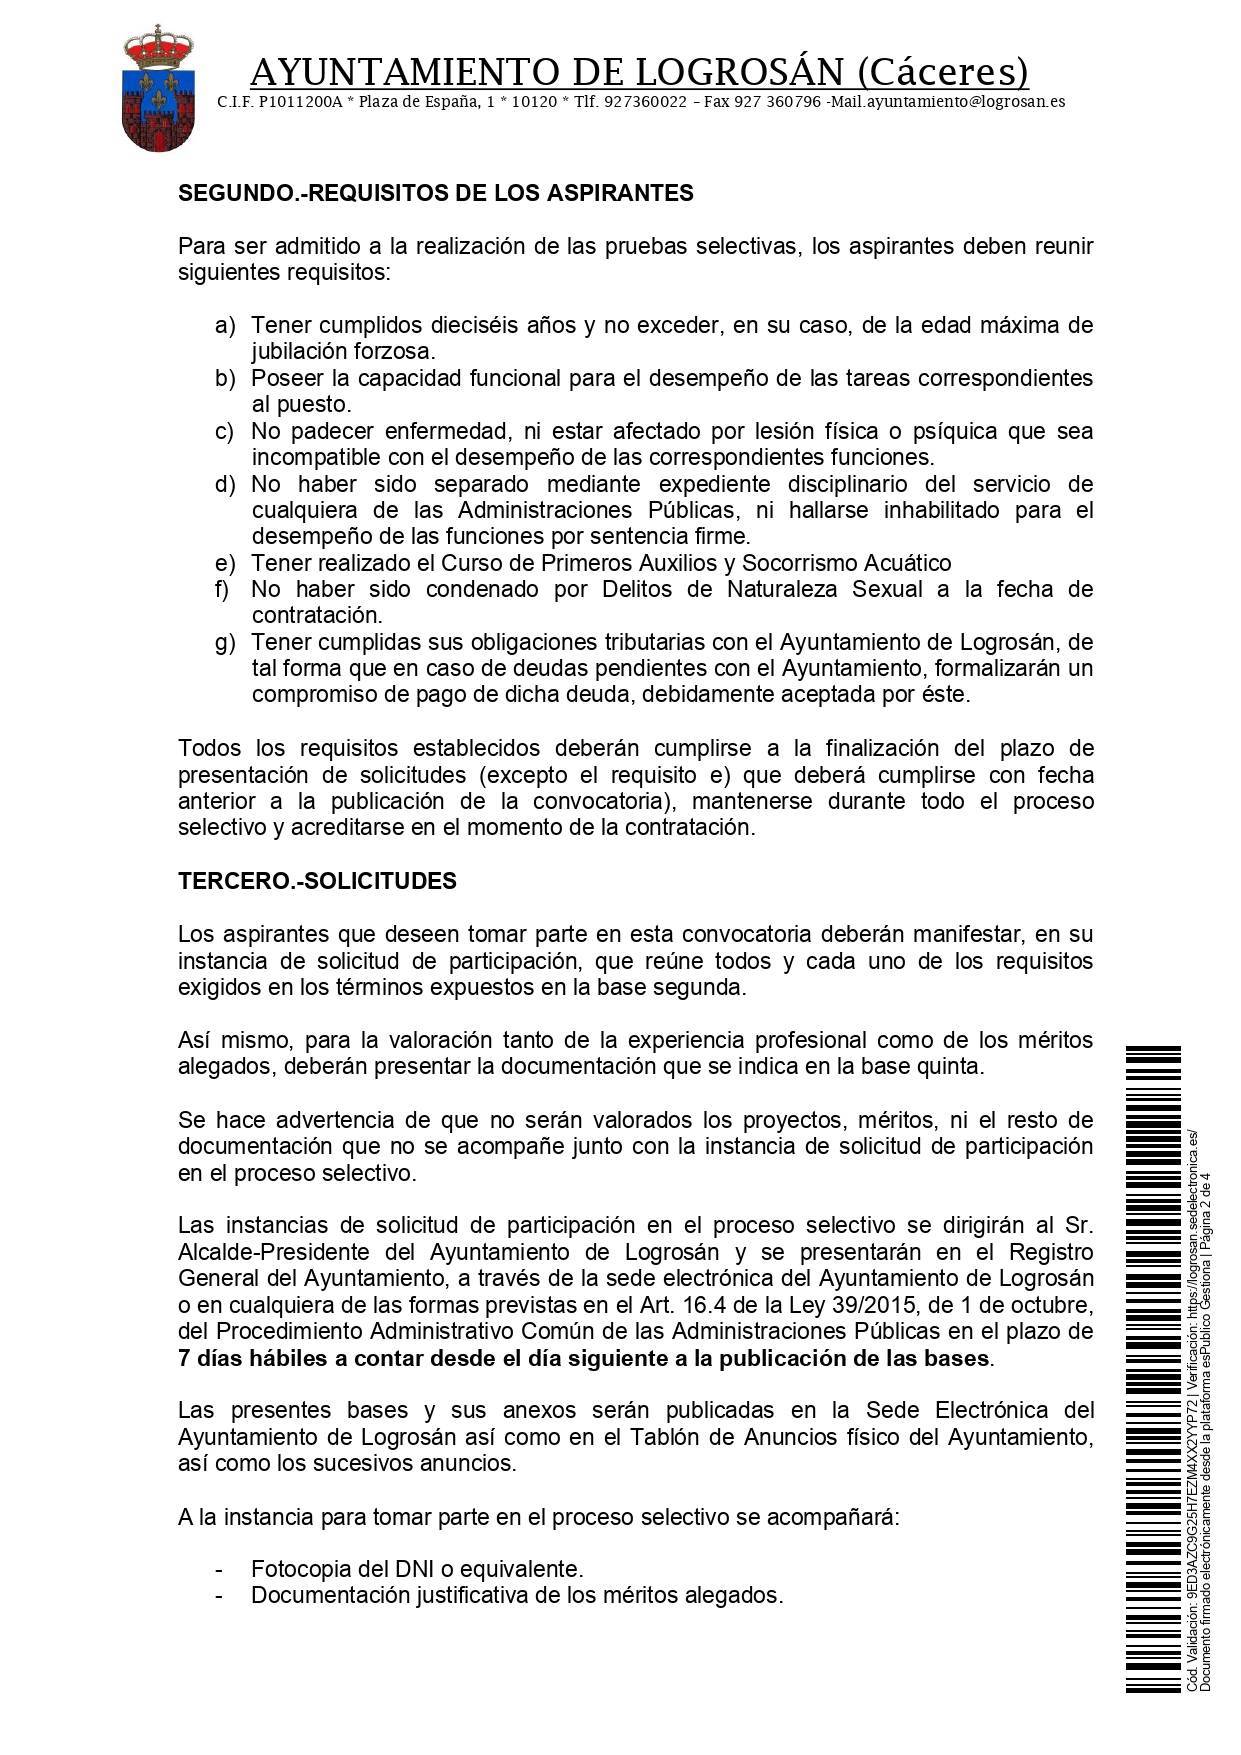 4 socorristas (2021) - Logrosán (Cáceres) 2